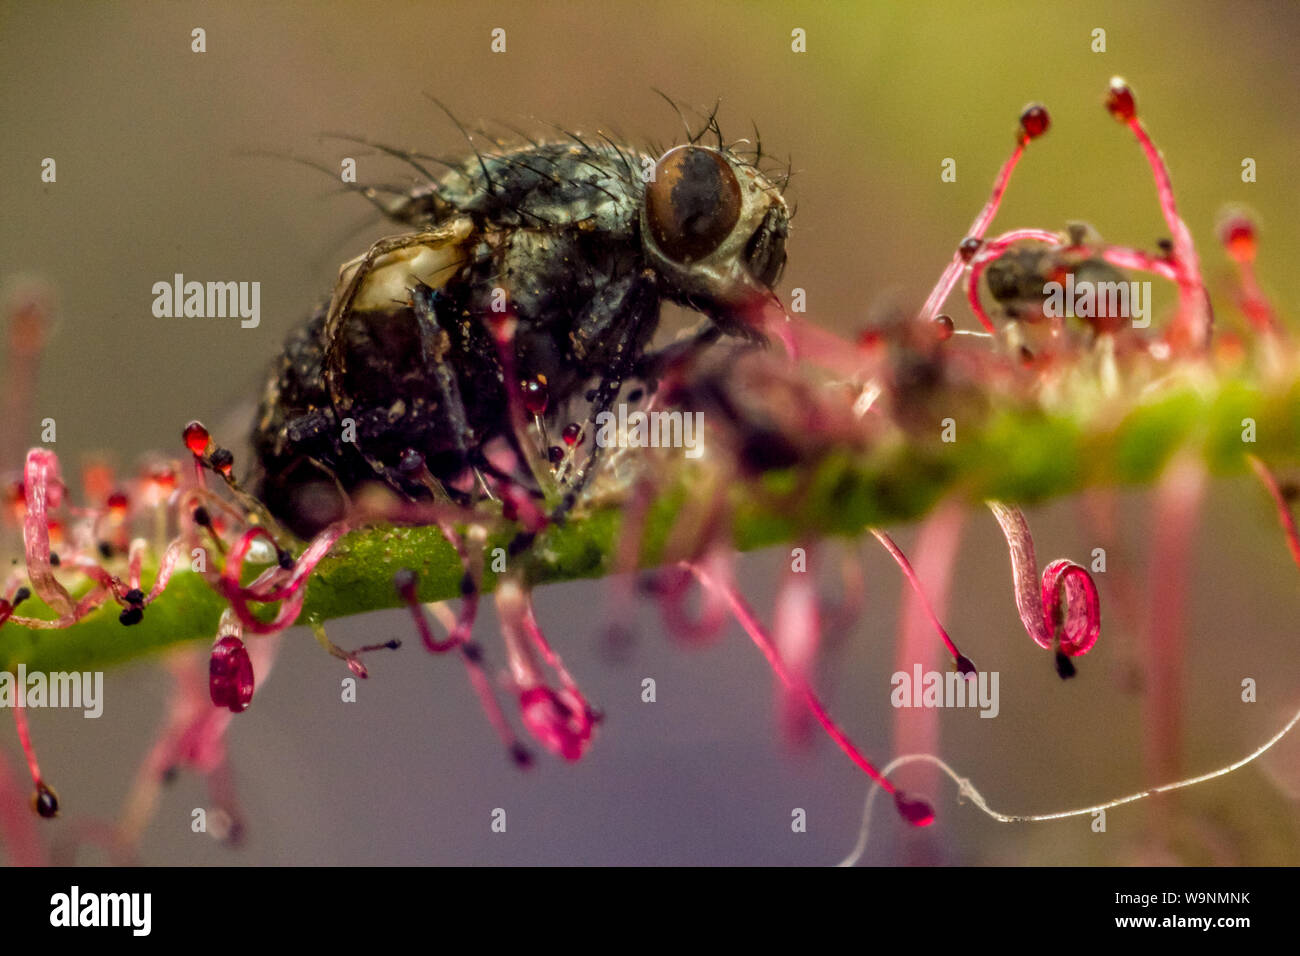 Fly capturés par une plante carnivore Droséra, close-up de l'insectes séchés b taraudé la colle Banque D'Images